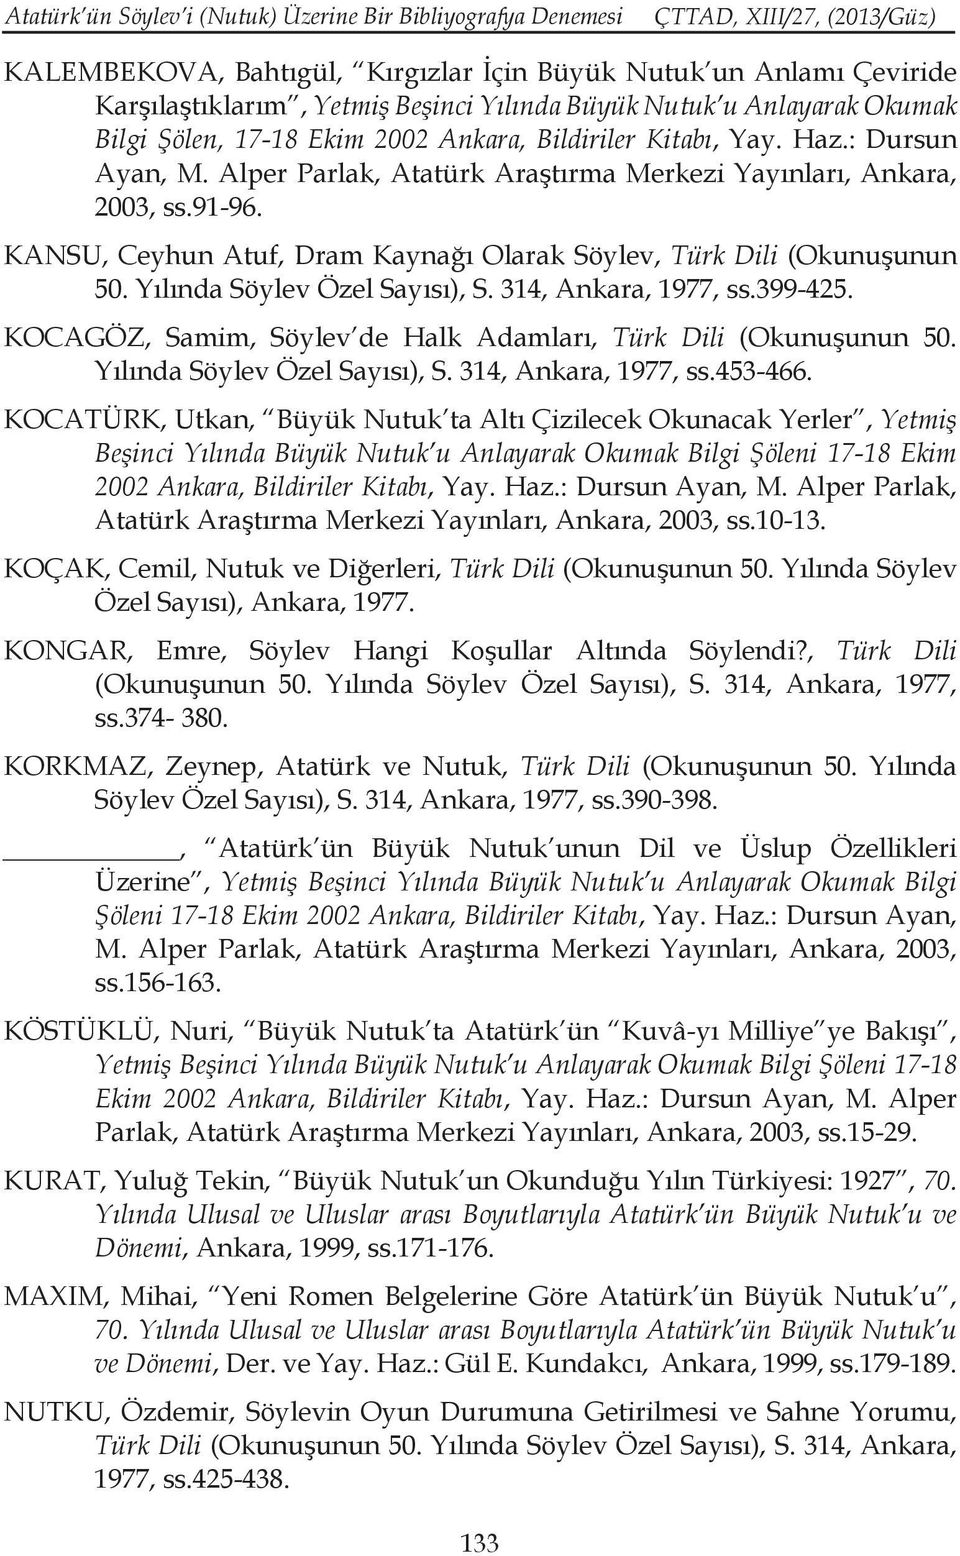 KANSU, Ceyhun Atuf, Dram Kaynağı Olarak Söylev, Türk Dili (Okunuşunun 50. Yılında Söylev Özel Sayısı), S. 314, Ankara, 1977, ss.399-425.